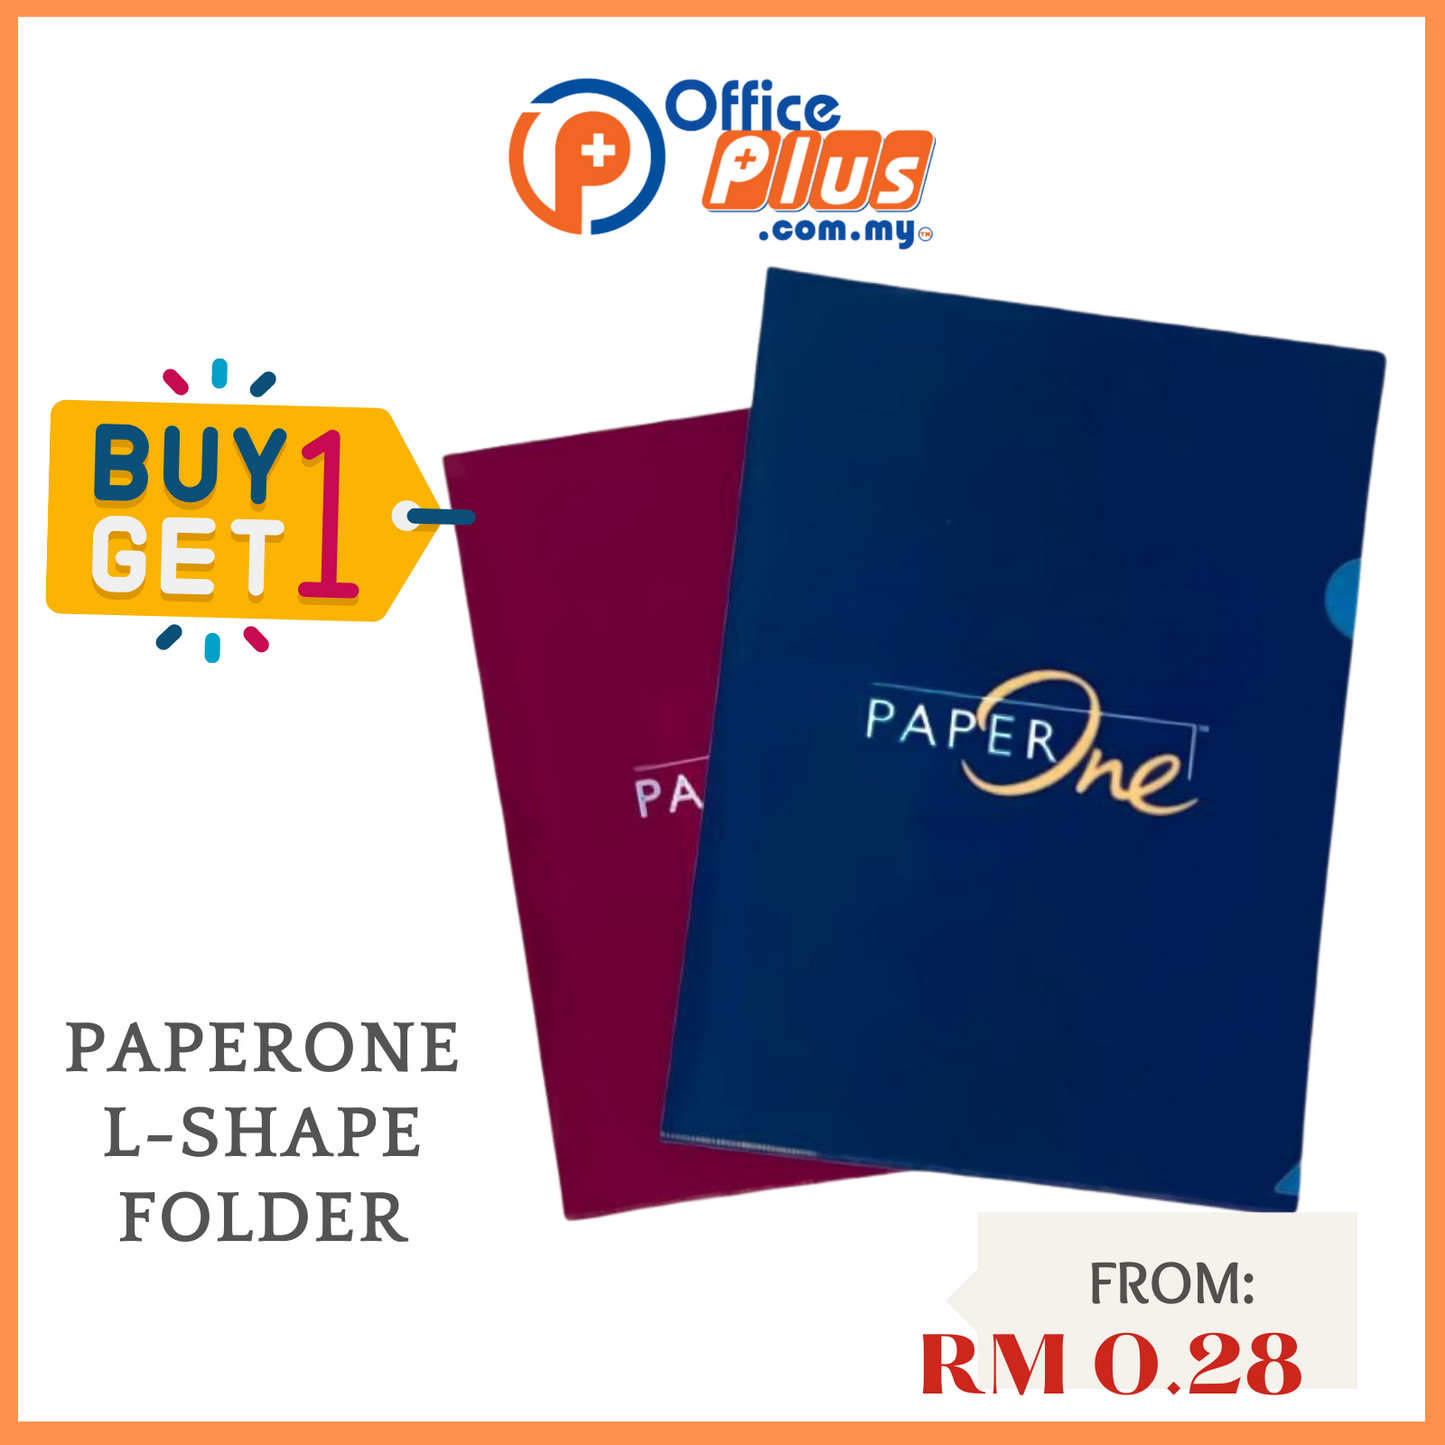 Paperone L-Shape Folder - OfficePlus